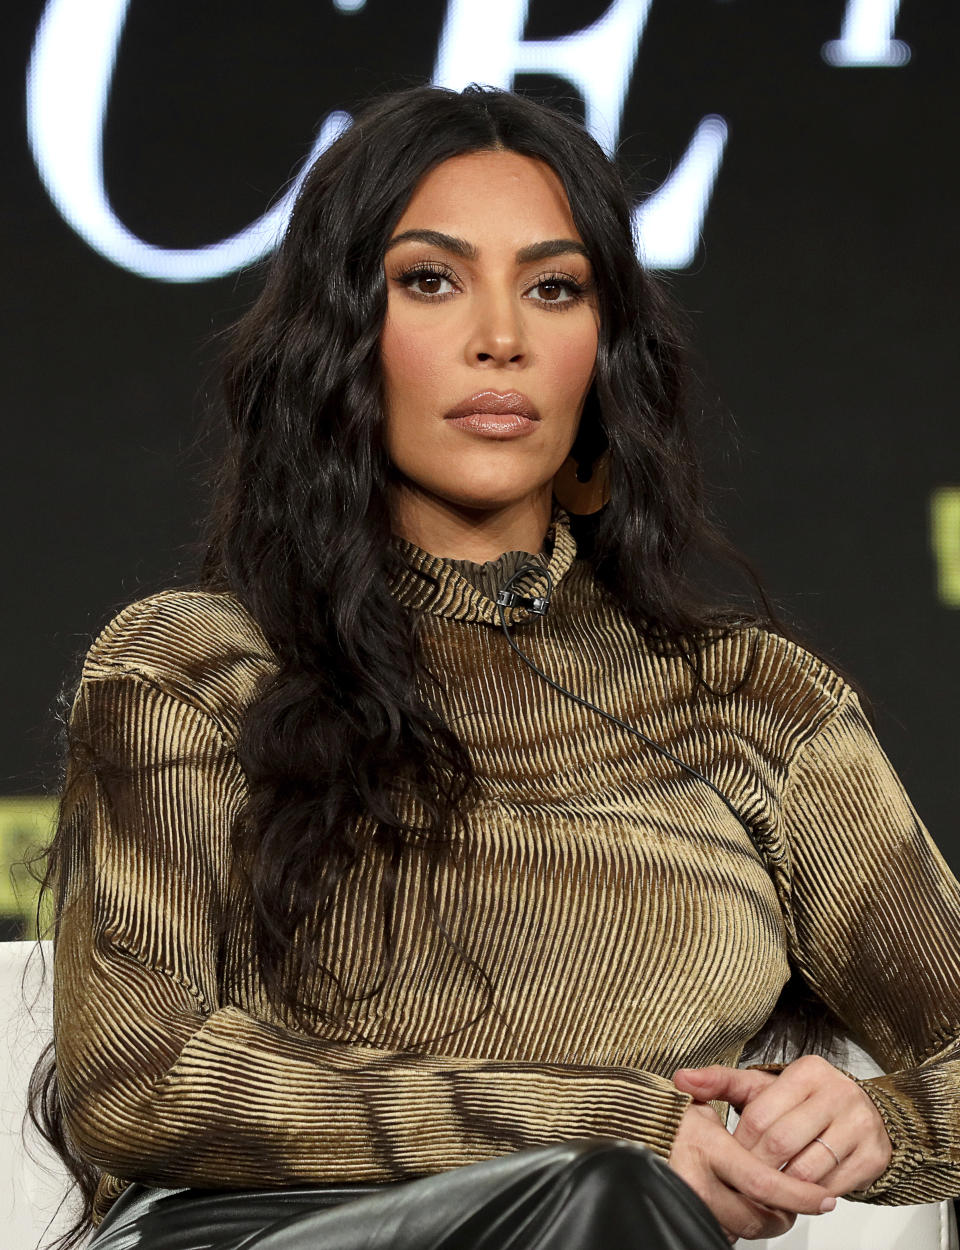 En esta foto del 18 de enero del 2020, Kim Kardashian West durante una conferencia de prensa de "Kim Kardashian West: The Justice Project" en Pasadena, California. (Foto por Willy Sanjuan/Invision/AP, Archivo)